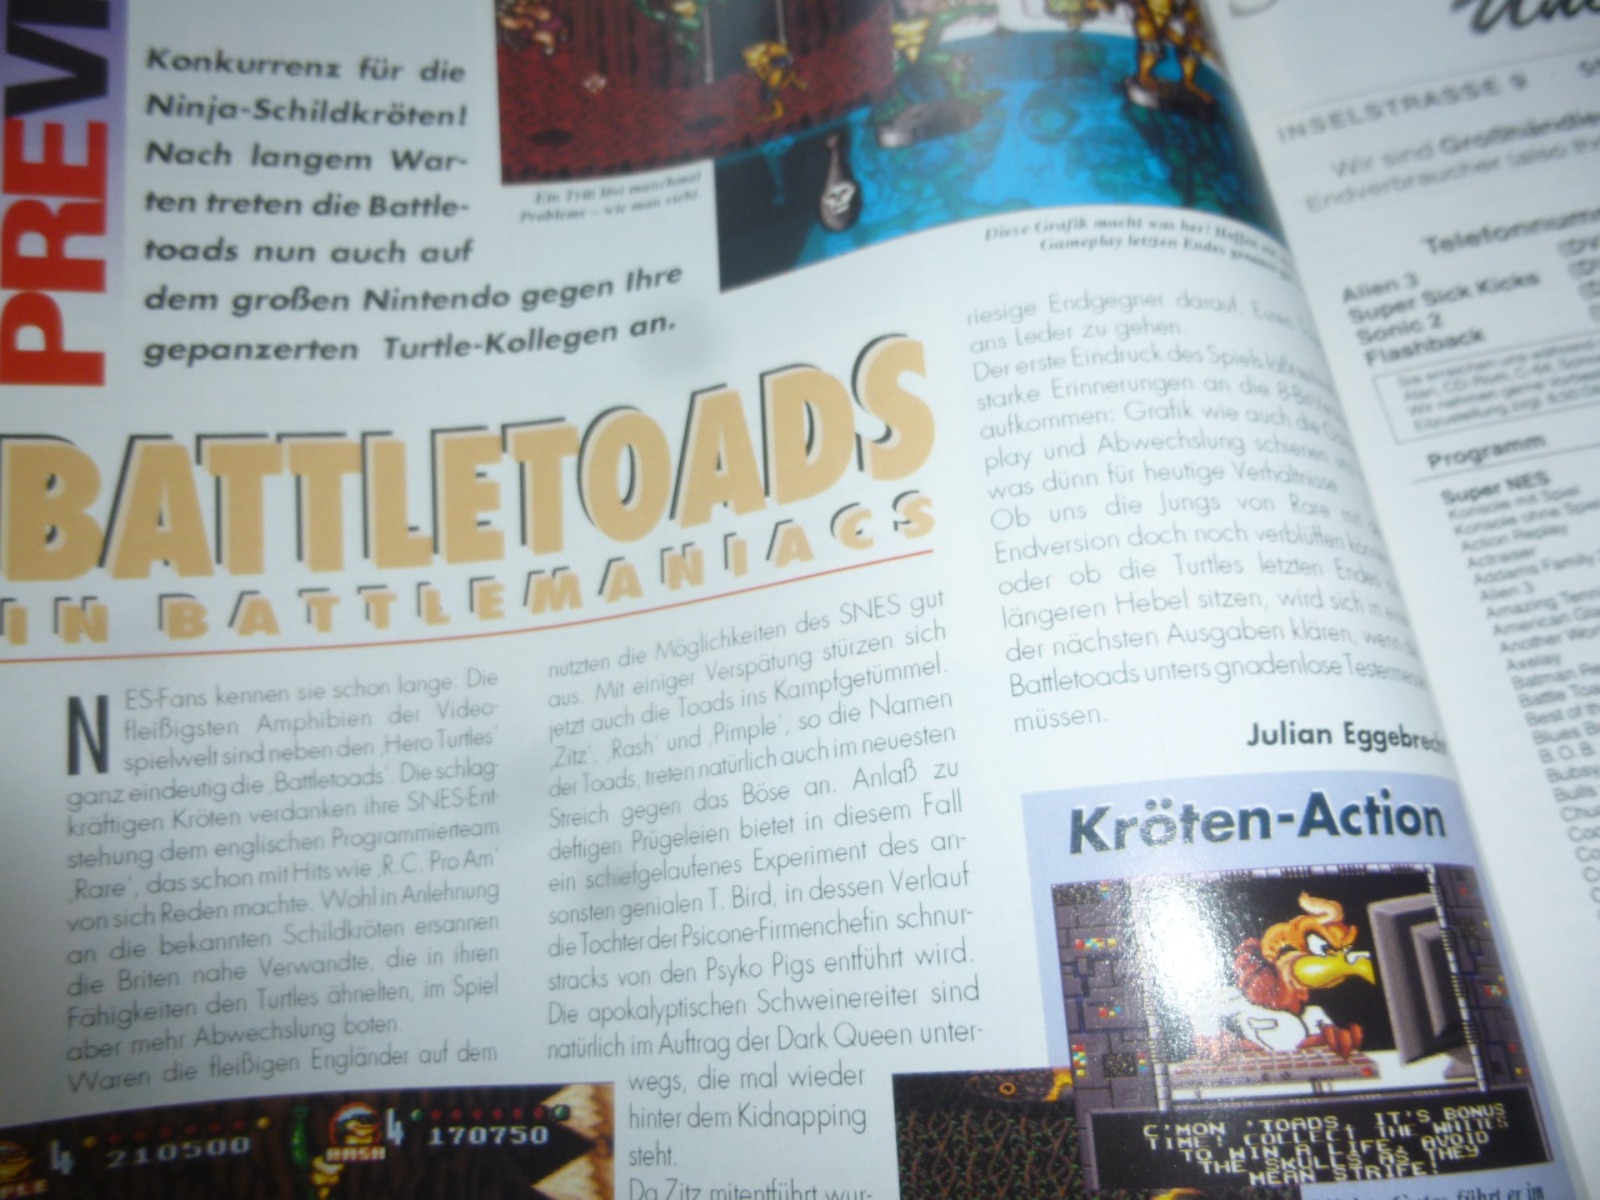 TOTAL Das unabhängige Magazin - 100% Nintendo - Ausgabe 9/93 1993 12